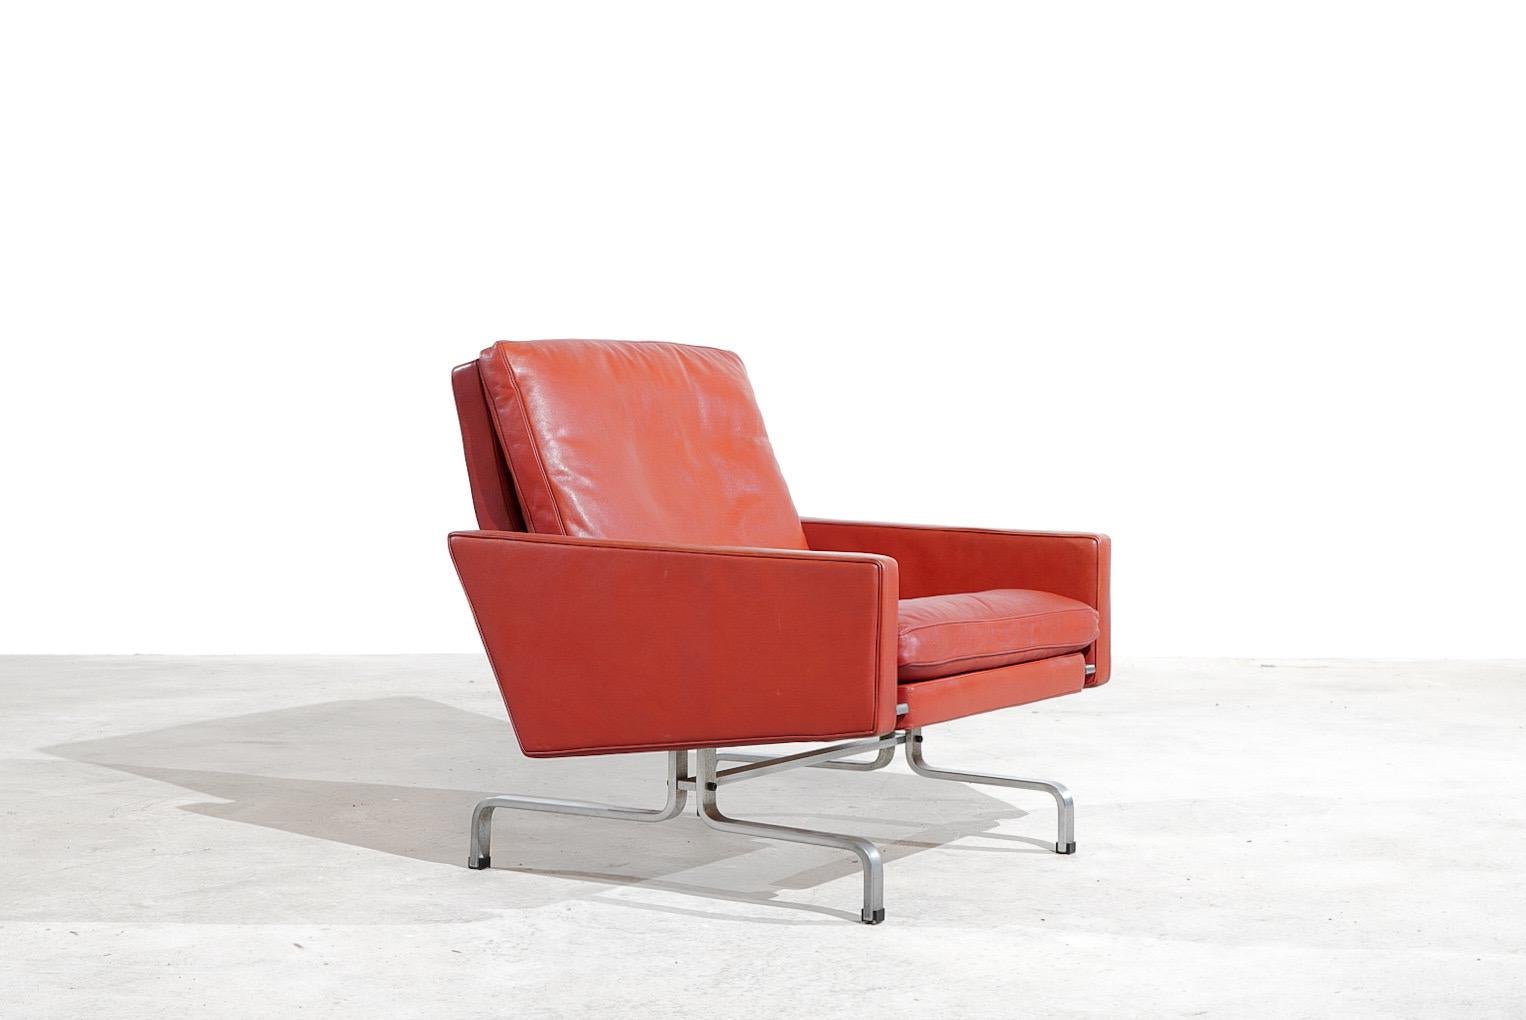 Erstaunlicher Loungesessel, entworfen von Poul Kjaerholm und hergestellt von Ejvind Kold Christensen, Dänemark 1957. 

Dieser Sessel hat eine sehr schöne originale Patina und ist in einem erstaunlichen Zustand. Das Leder zeigt eine erstaunliche